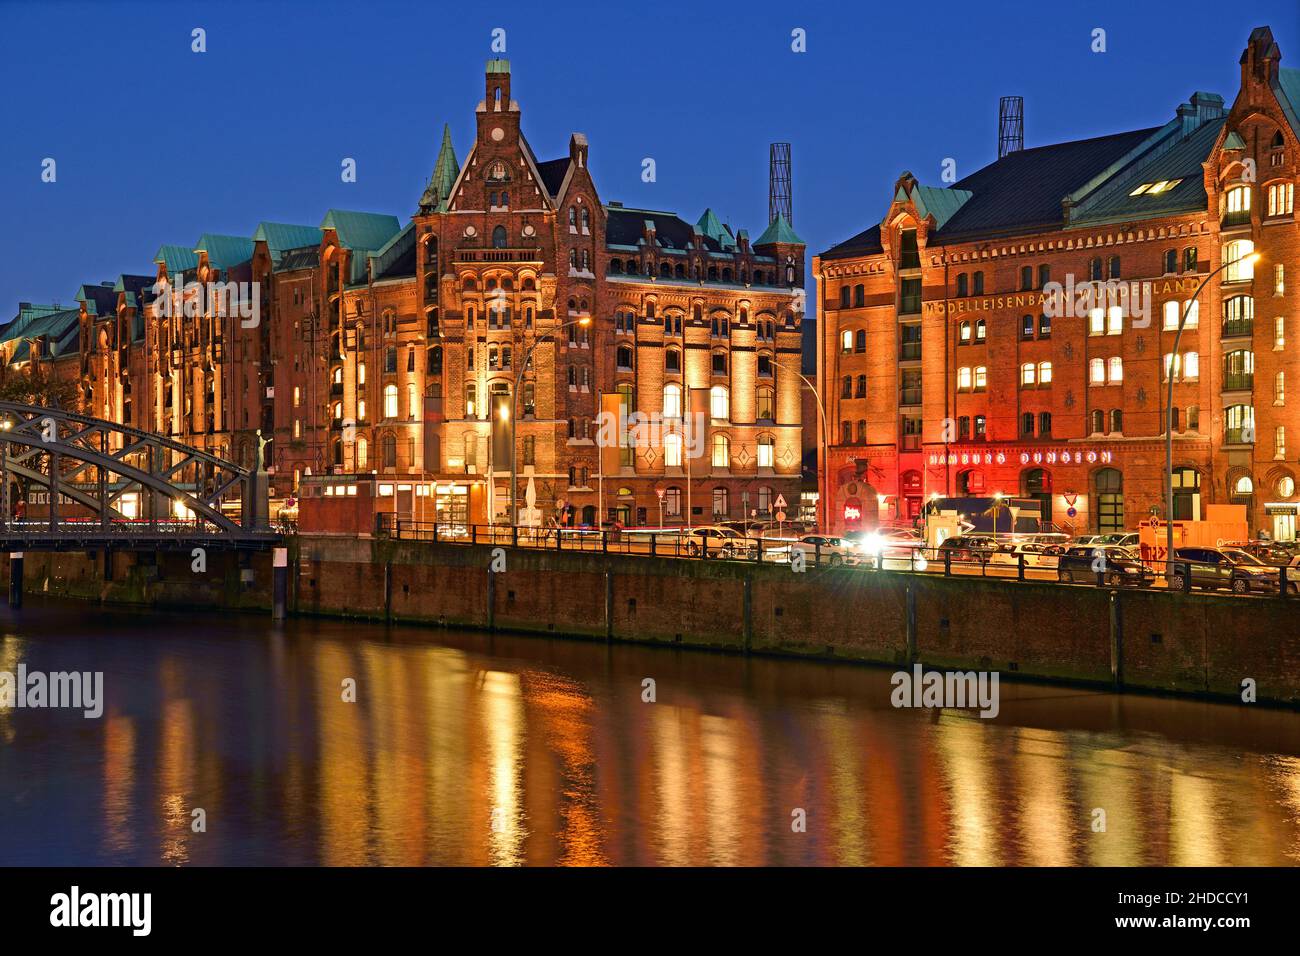 Europa, Deutschland, Hamburg, historische Speicherstadt, Nacht, Hamburg Dungeon, Modelleisenbahn Wunderland, Nachtaufnahme, blaue Stunde, Stock Photo